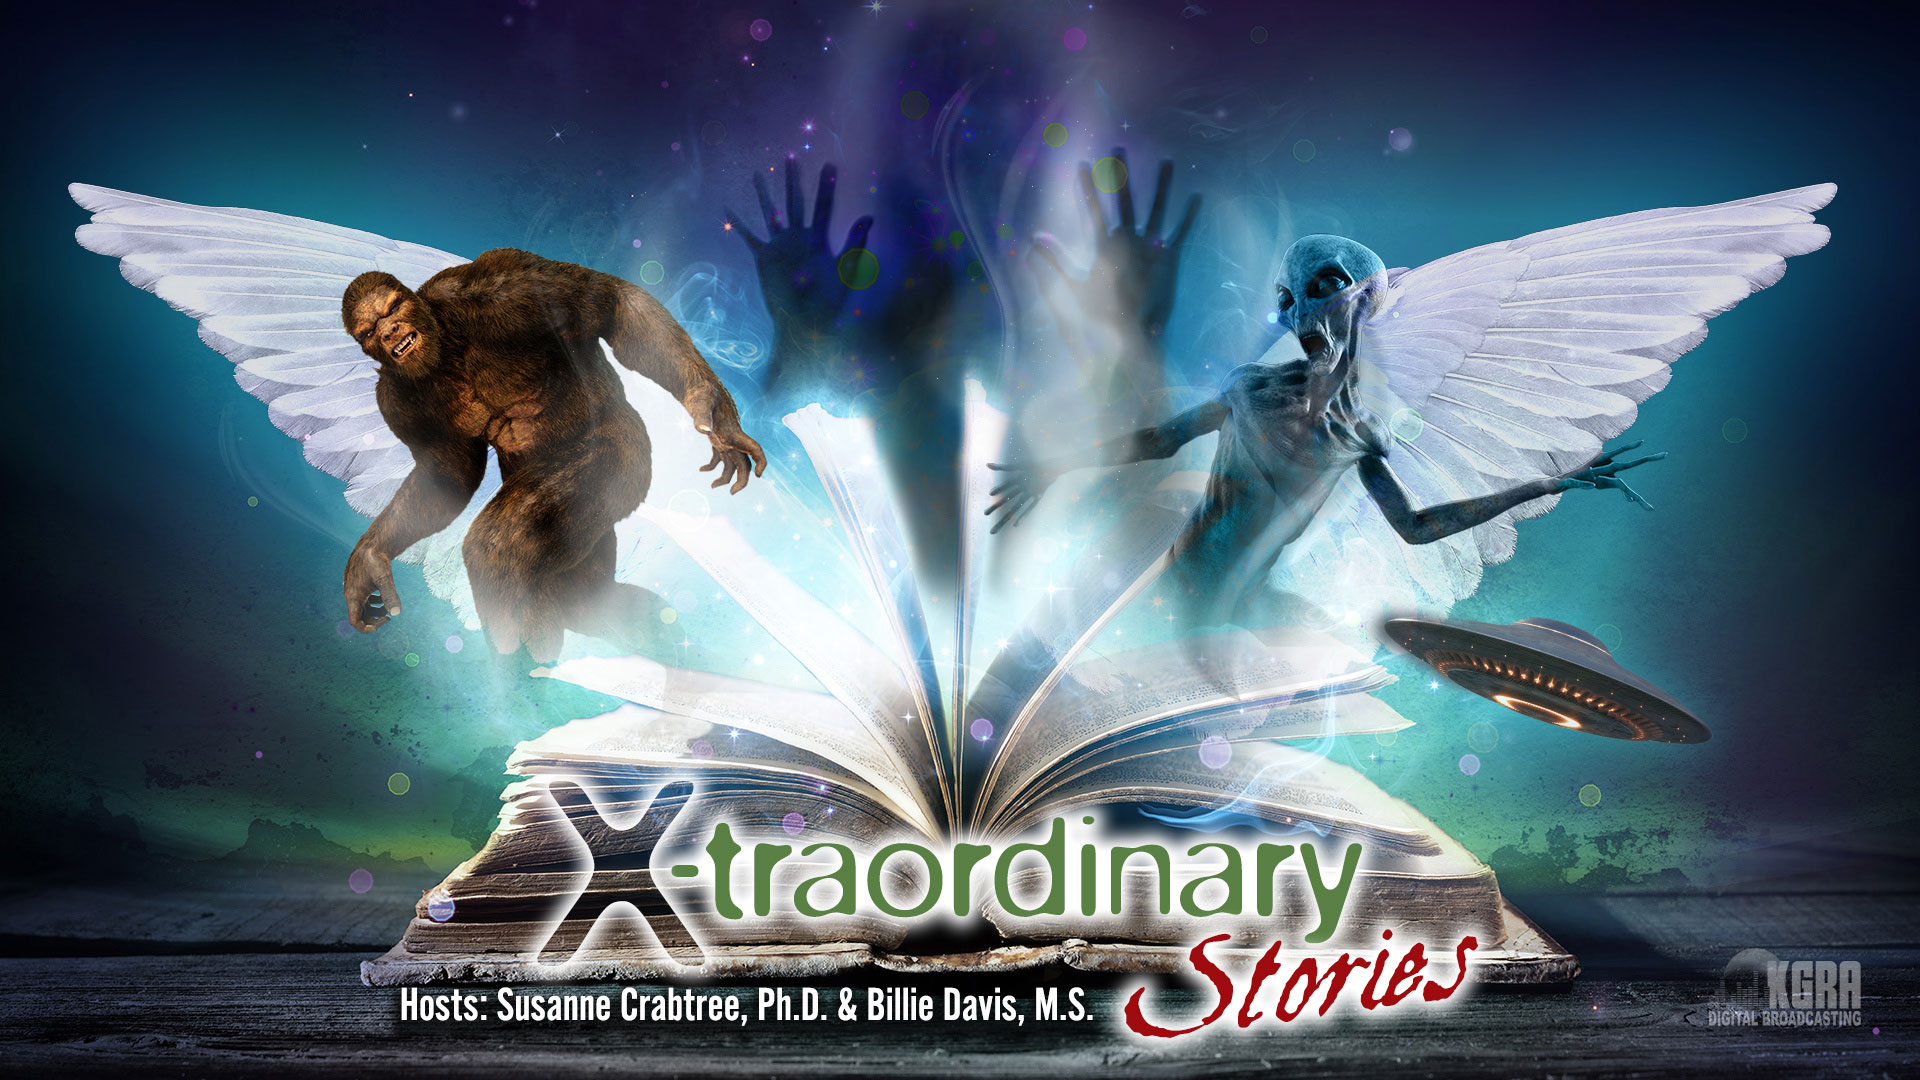 Xtraordianry-Stories KGRA Digital Broadcasting